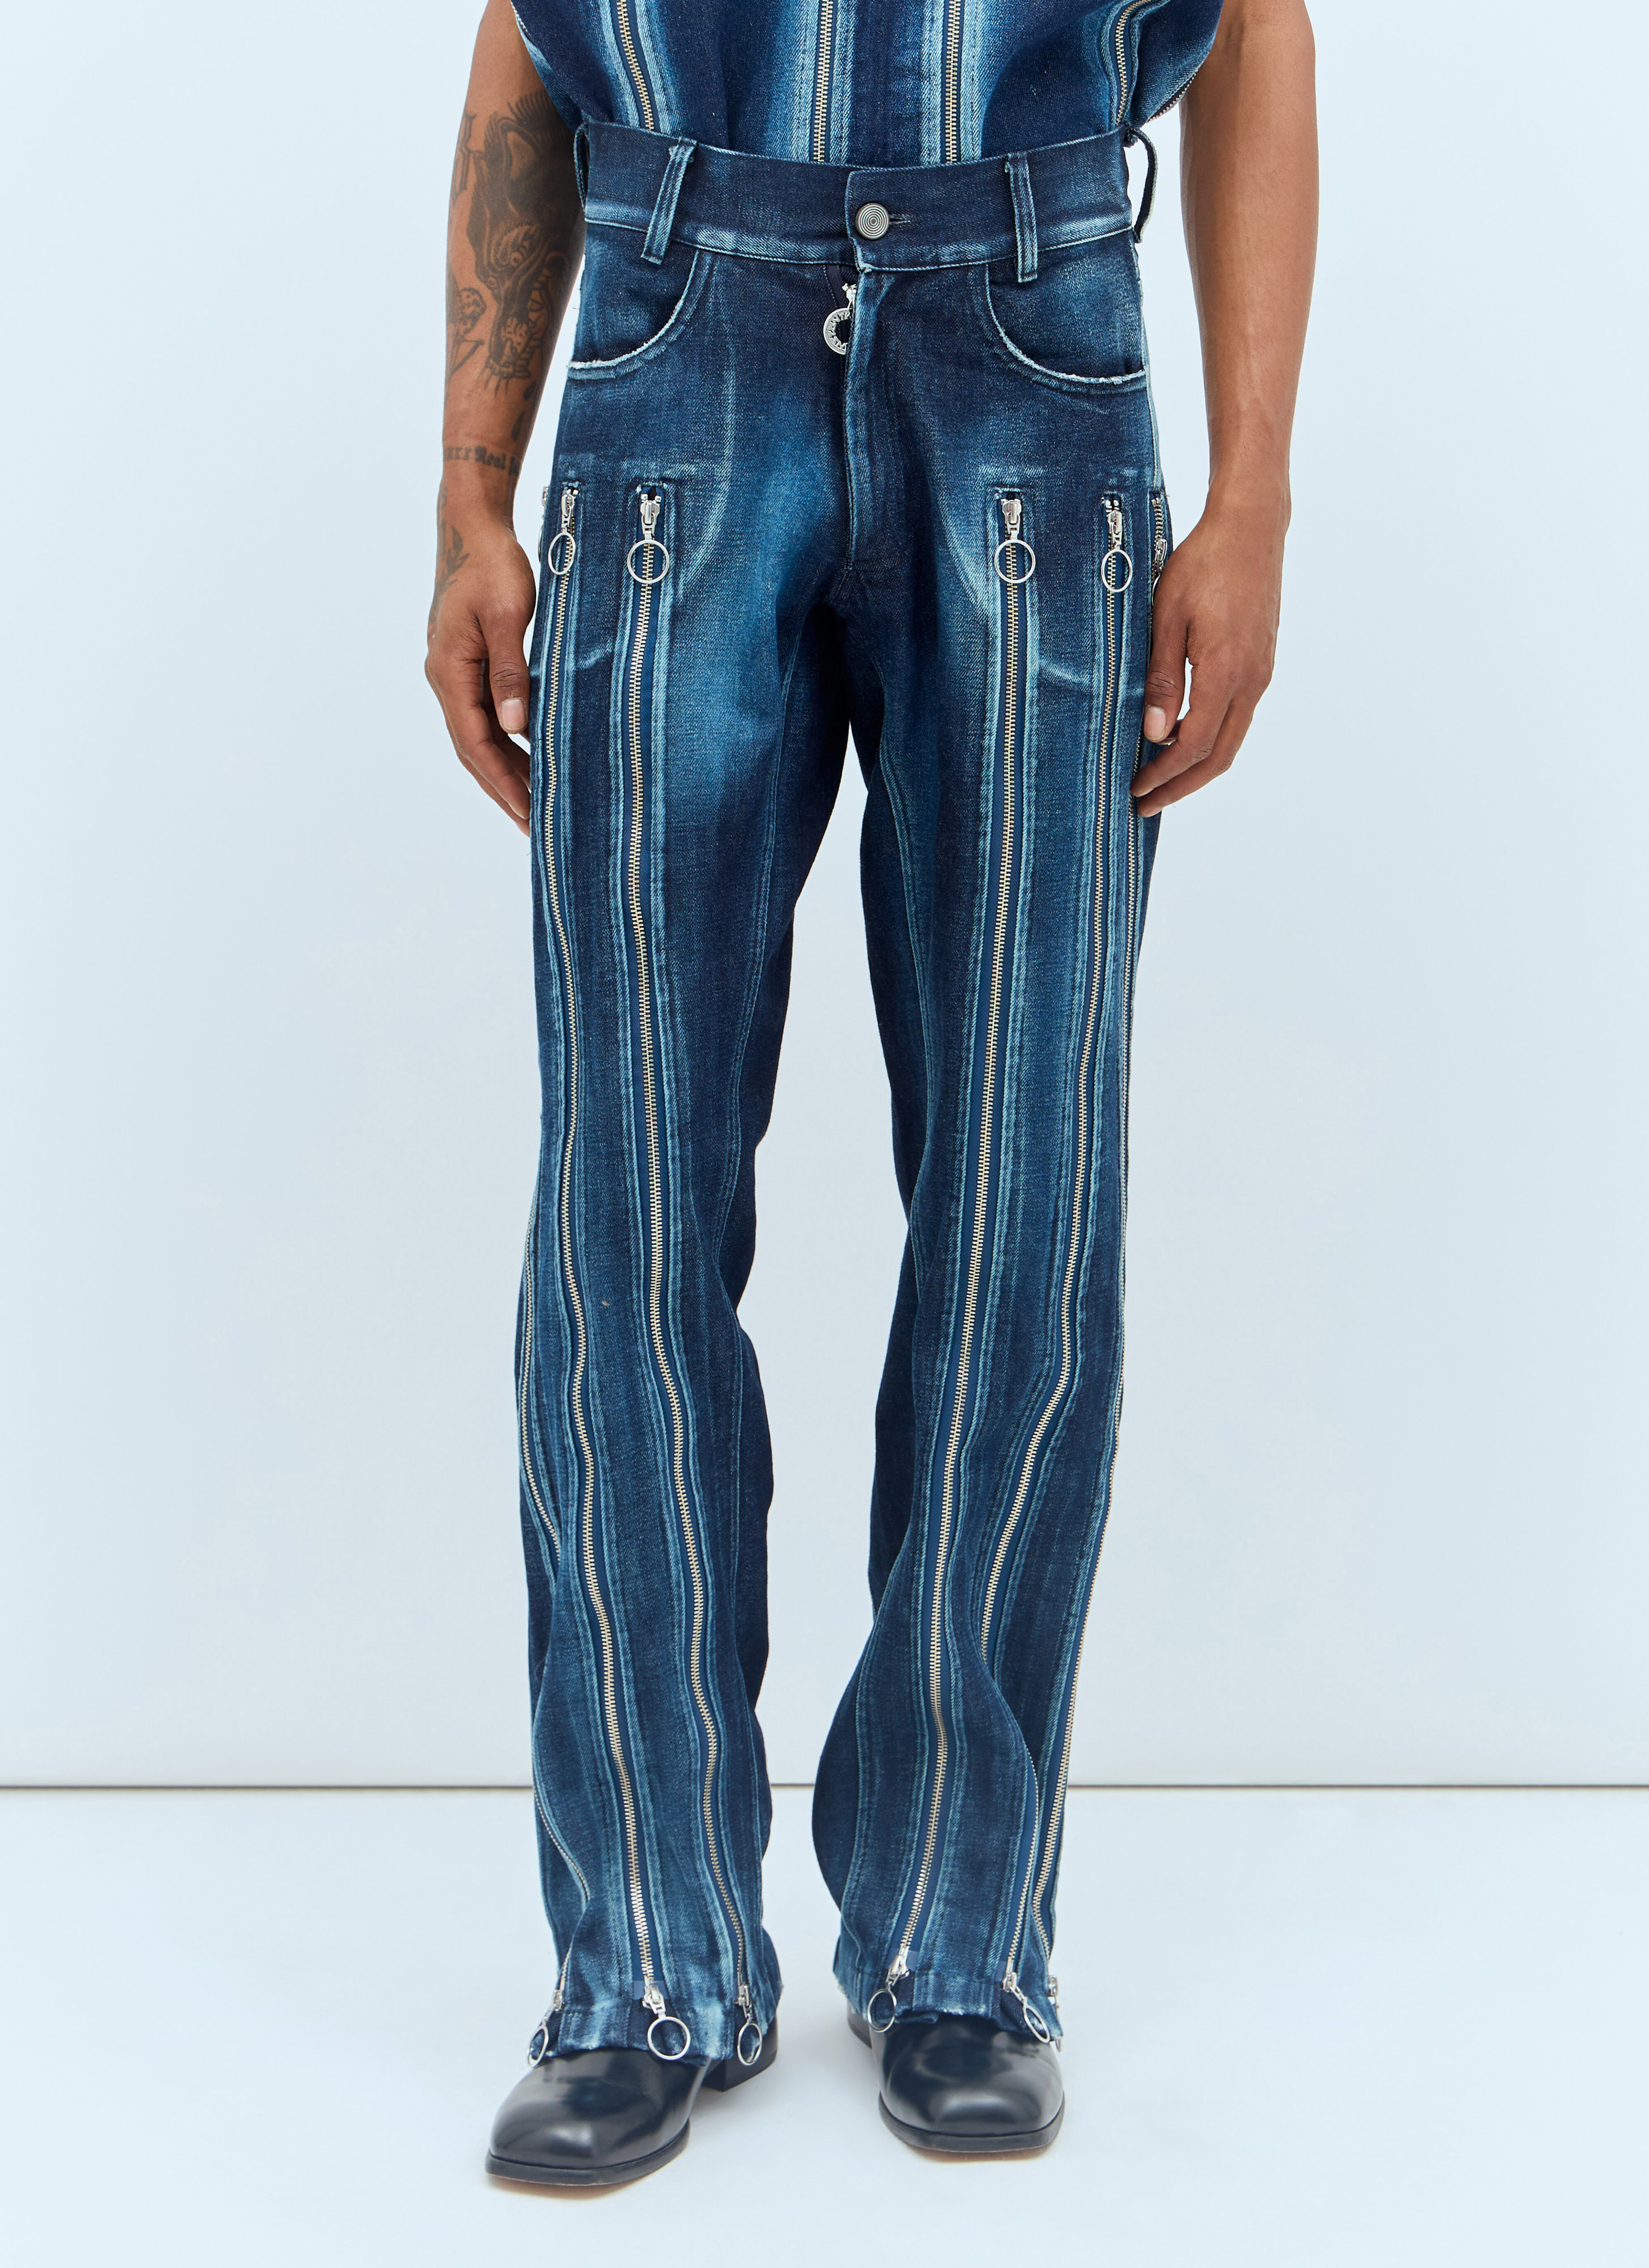 Charlie Constantinou Adjustable-Fit Zip Jeans Blue cco0156002